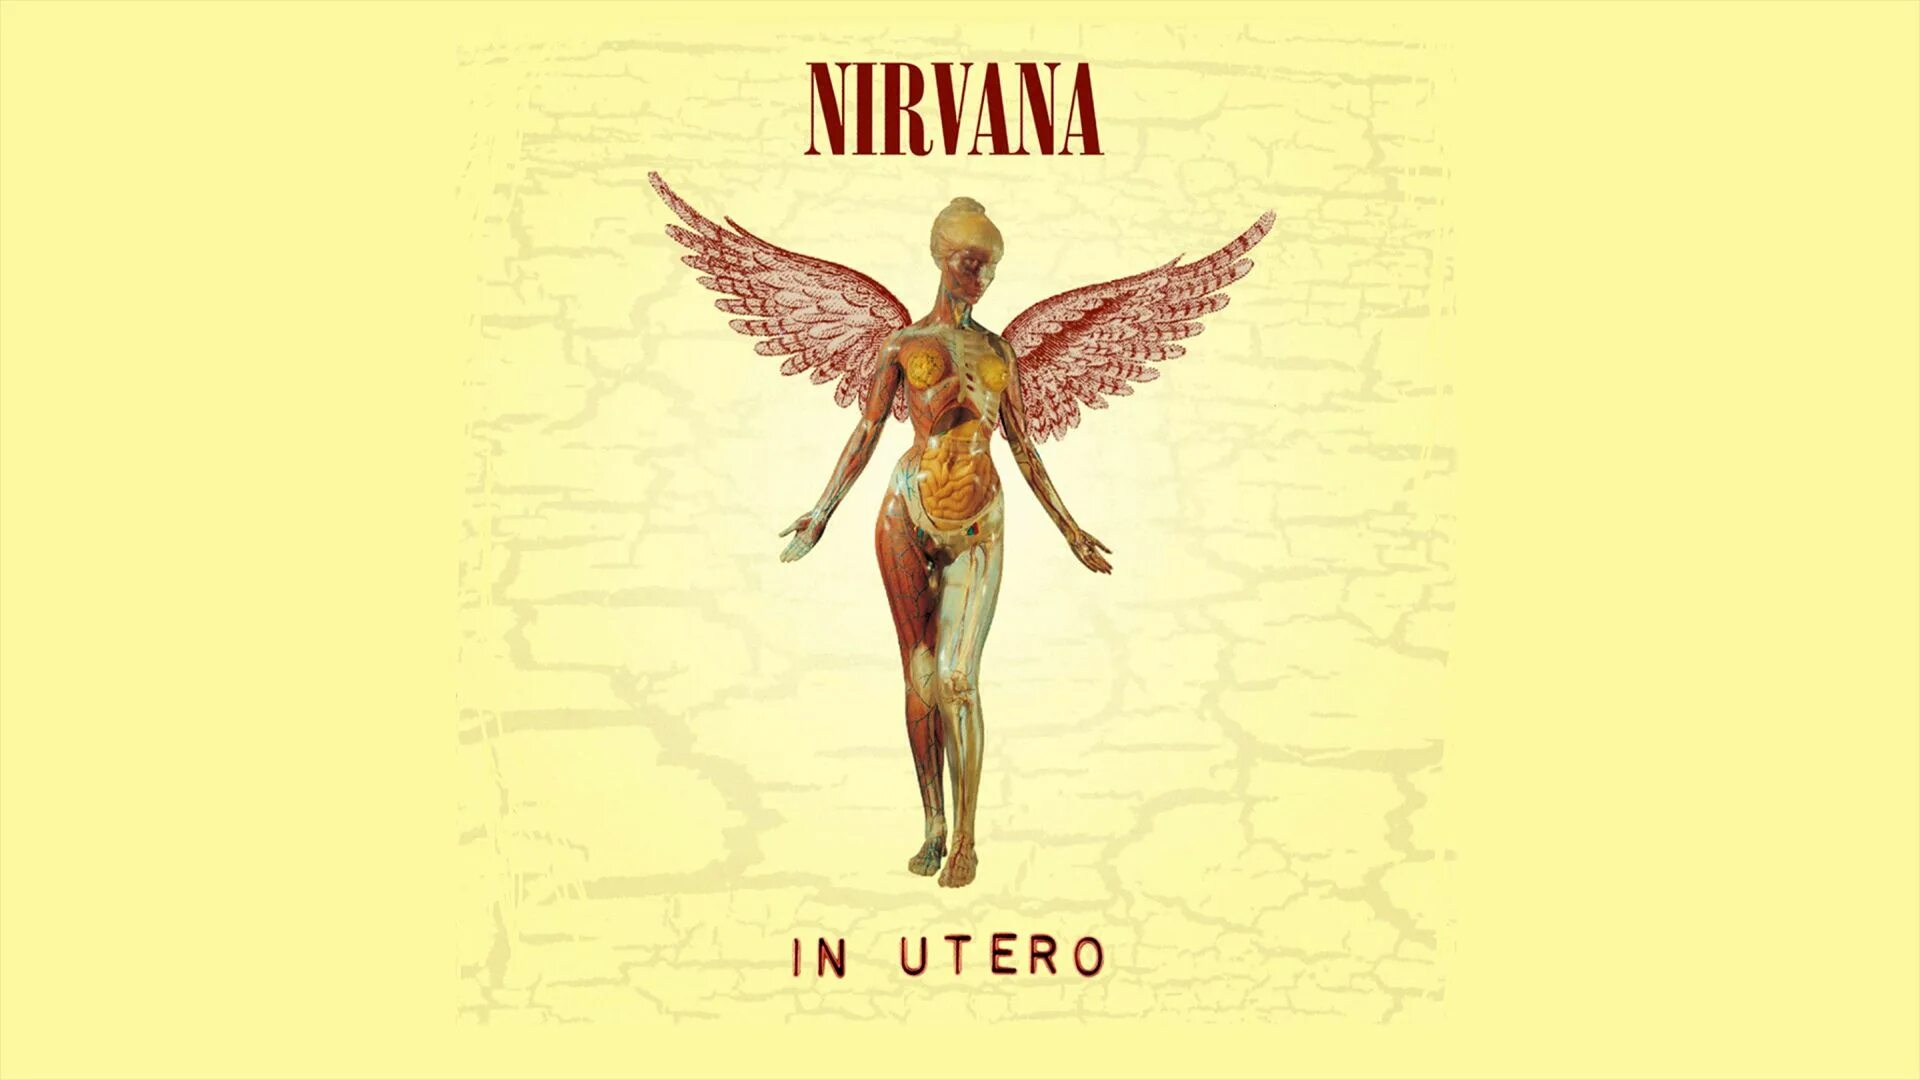 Я прыгаю в нирвану это делает. 1993 - In utero. Нирвана альбом ин утеро. In utero 2013. In utero Nirvana альбомы Nirvana обложка.